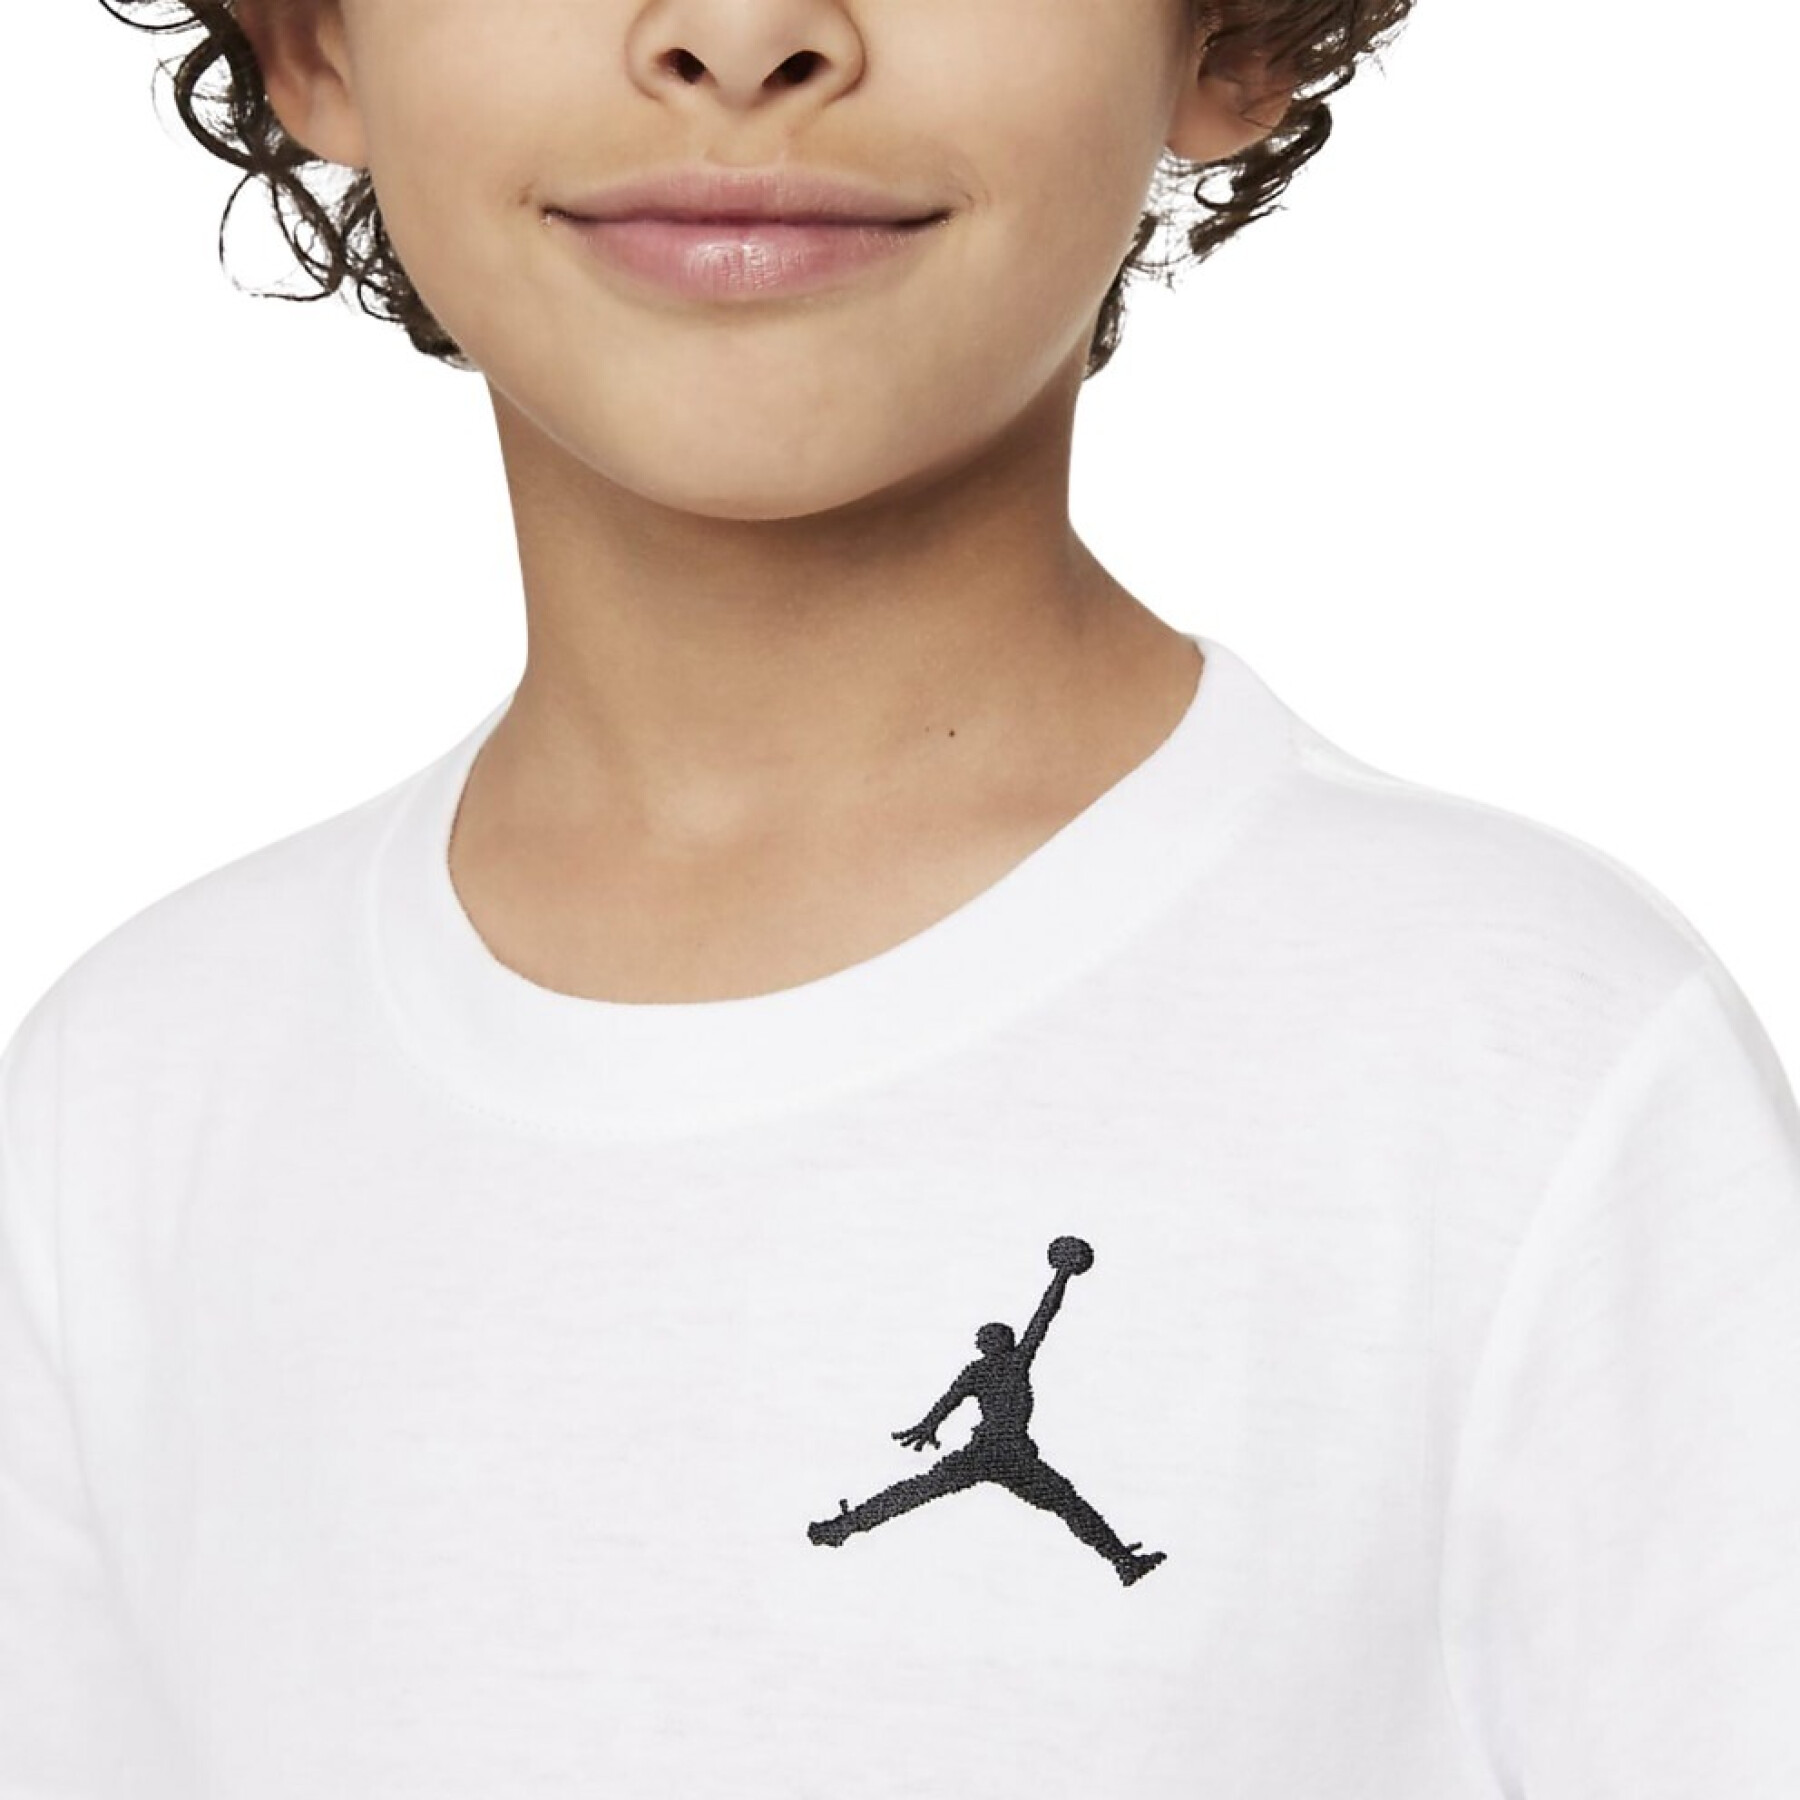 T-shirt per bambini Jordan Jumpman Air EMB